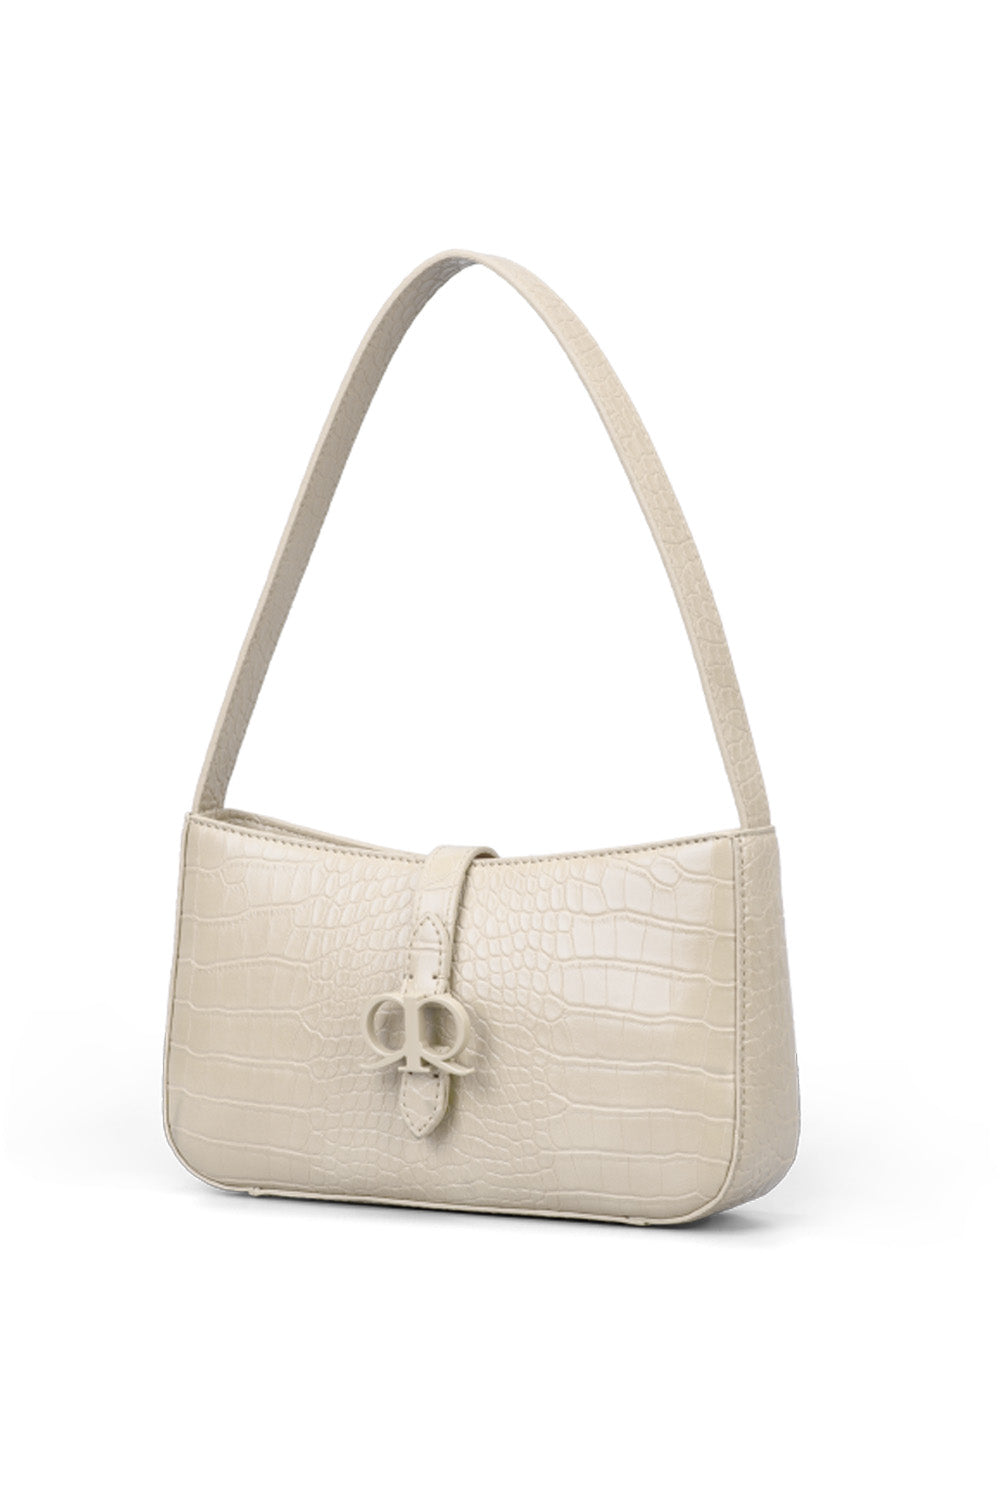 RR Juliet Croco Shoulder Bag in Ivory